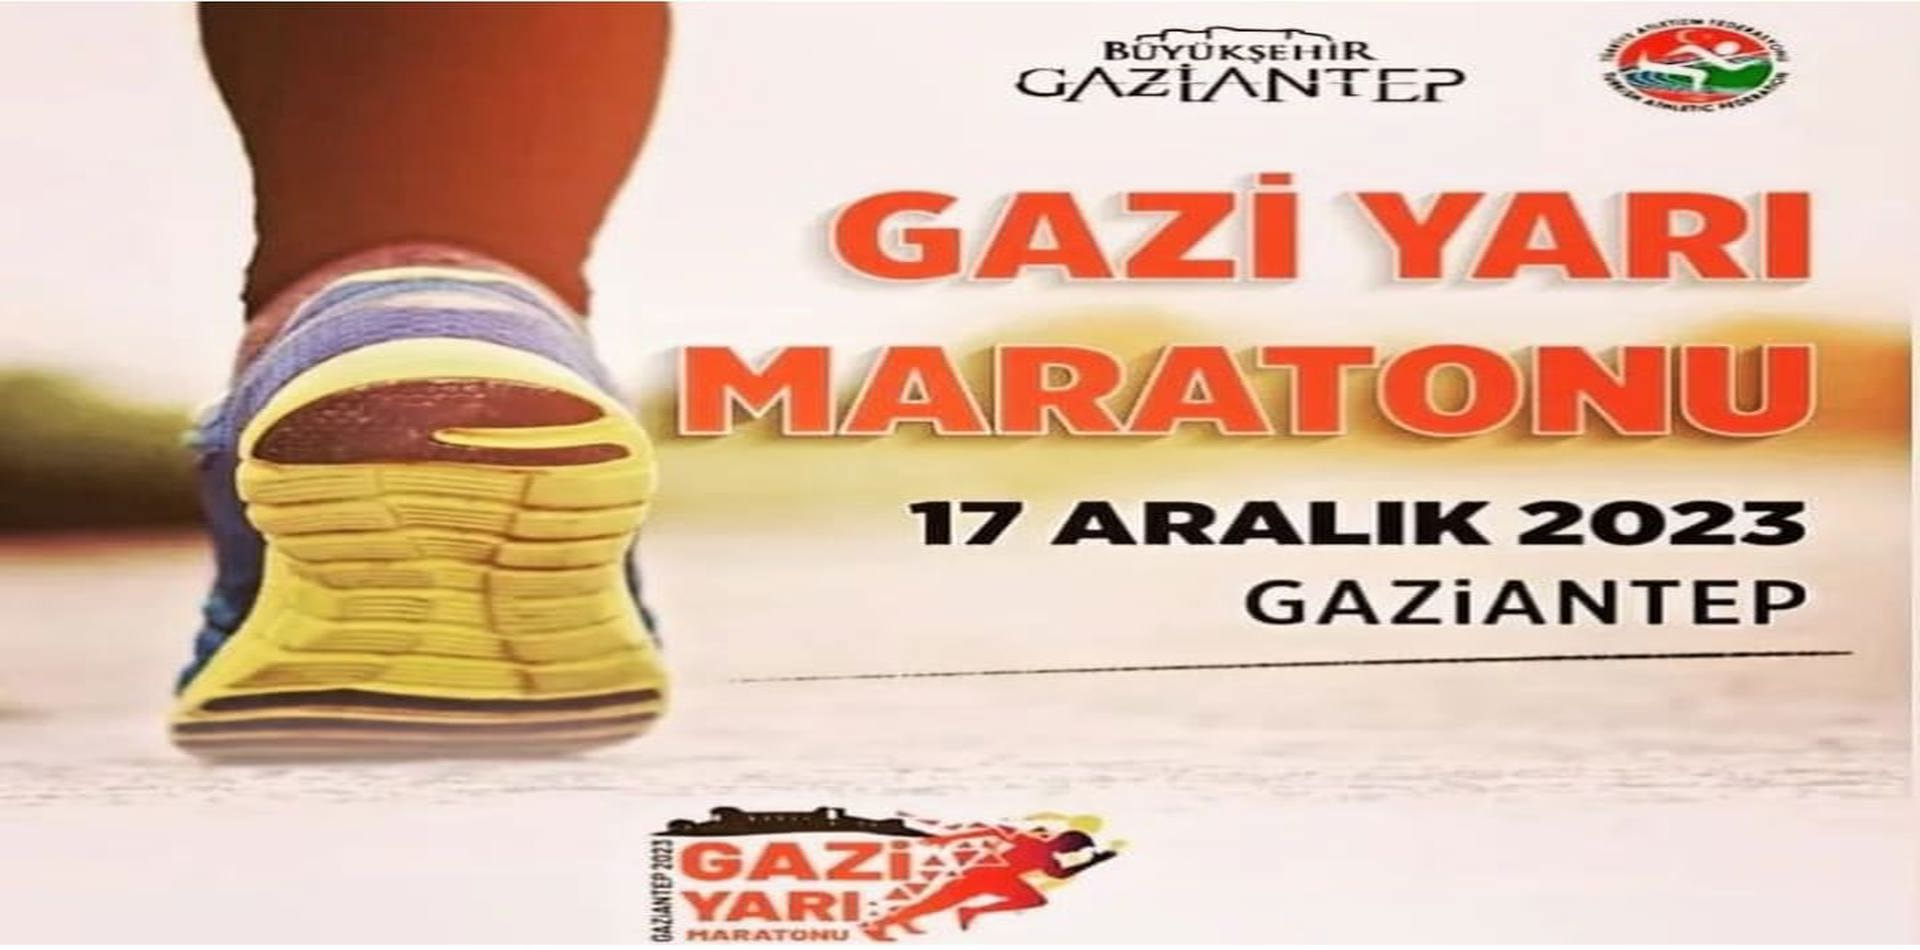 Gaziantep Şehri 5. Gazi Yarı Maratonuna Ev Sahipliği Yapacak